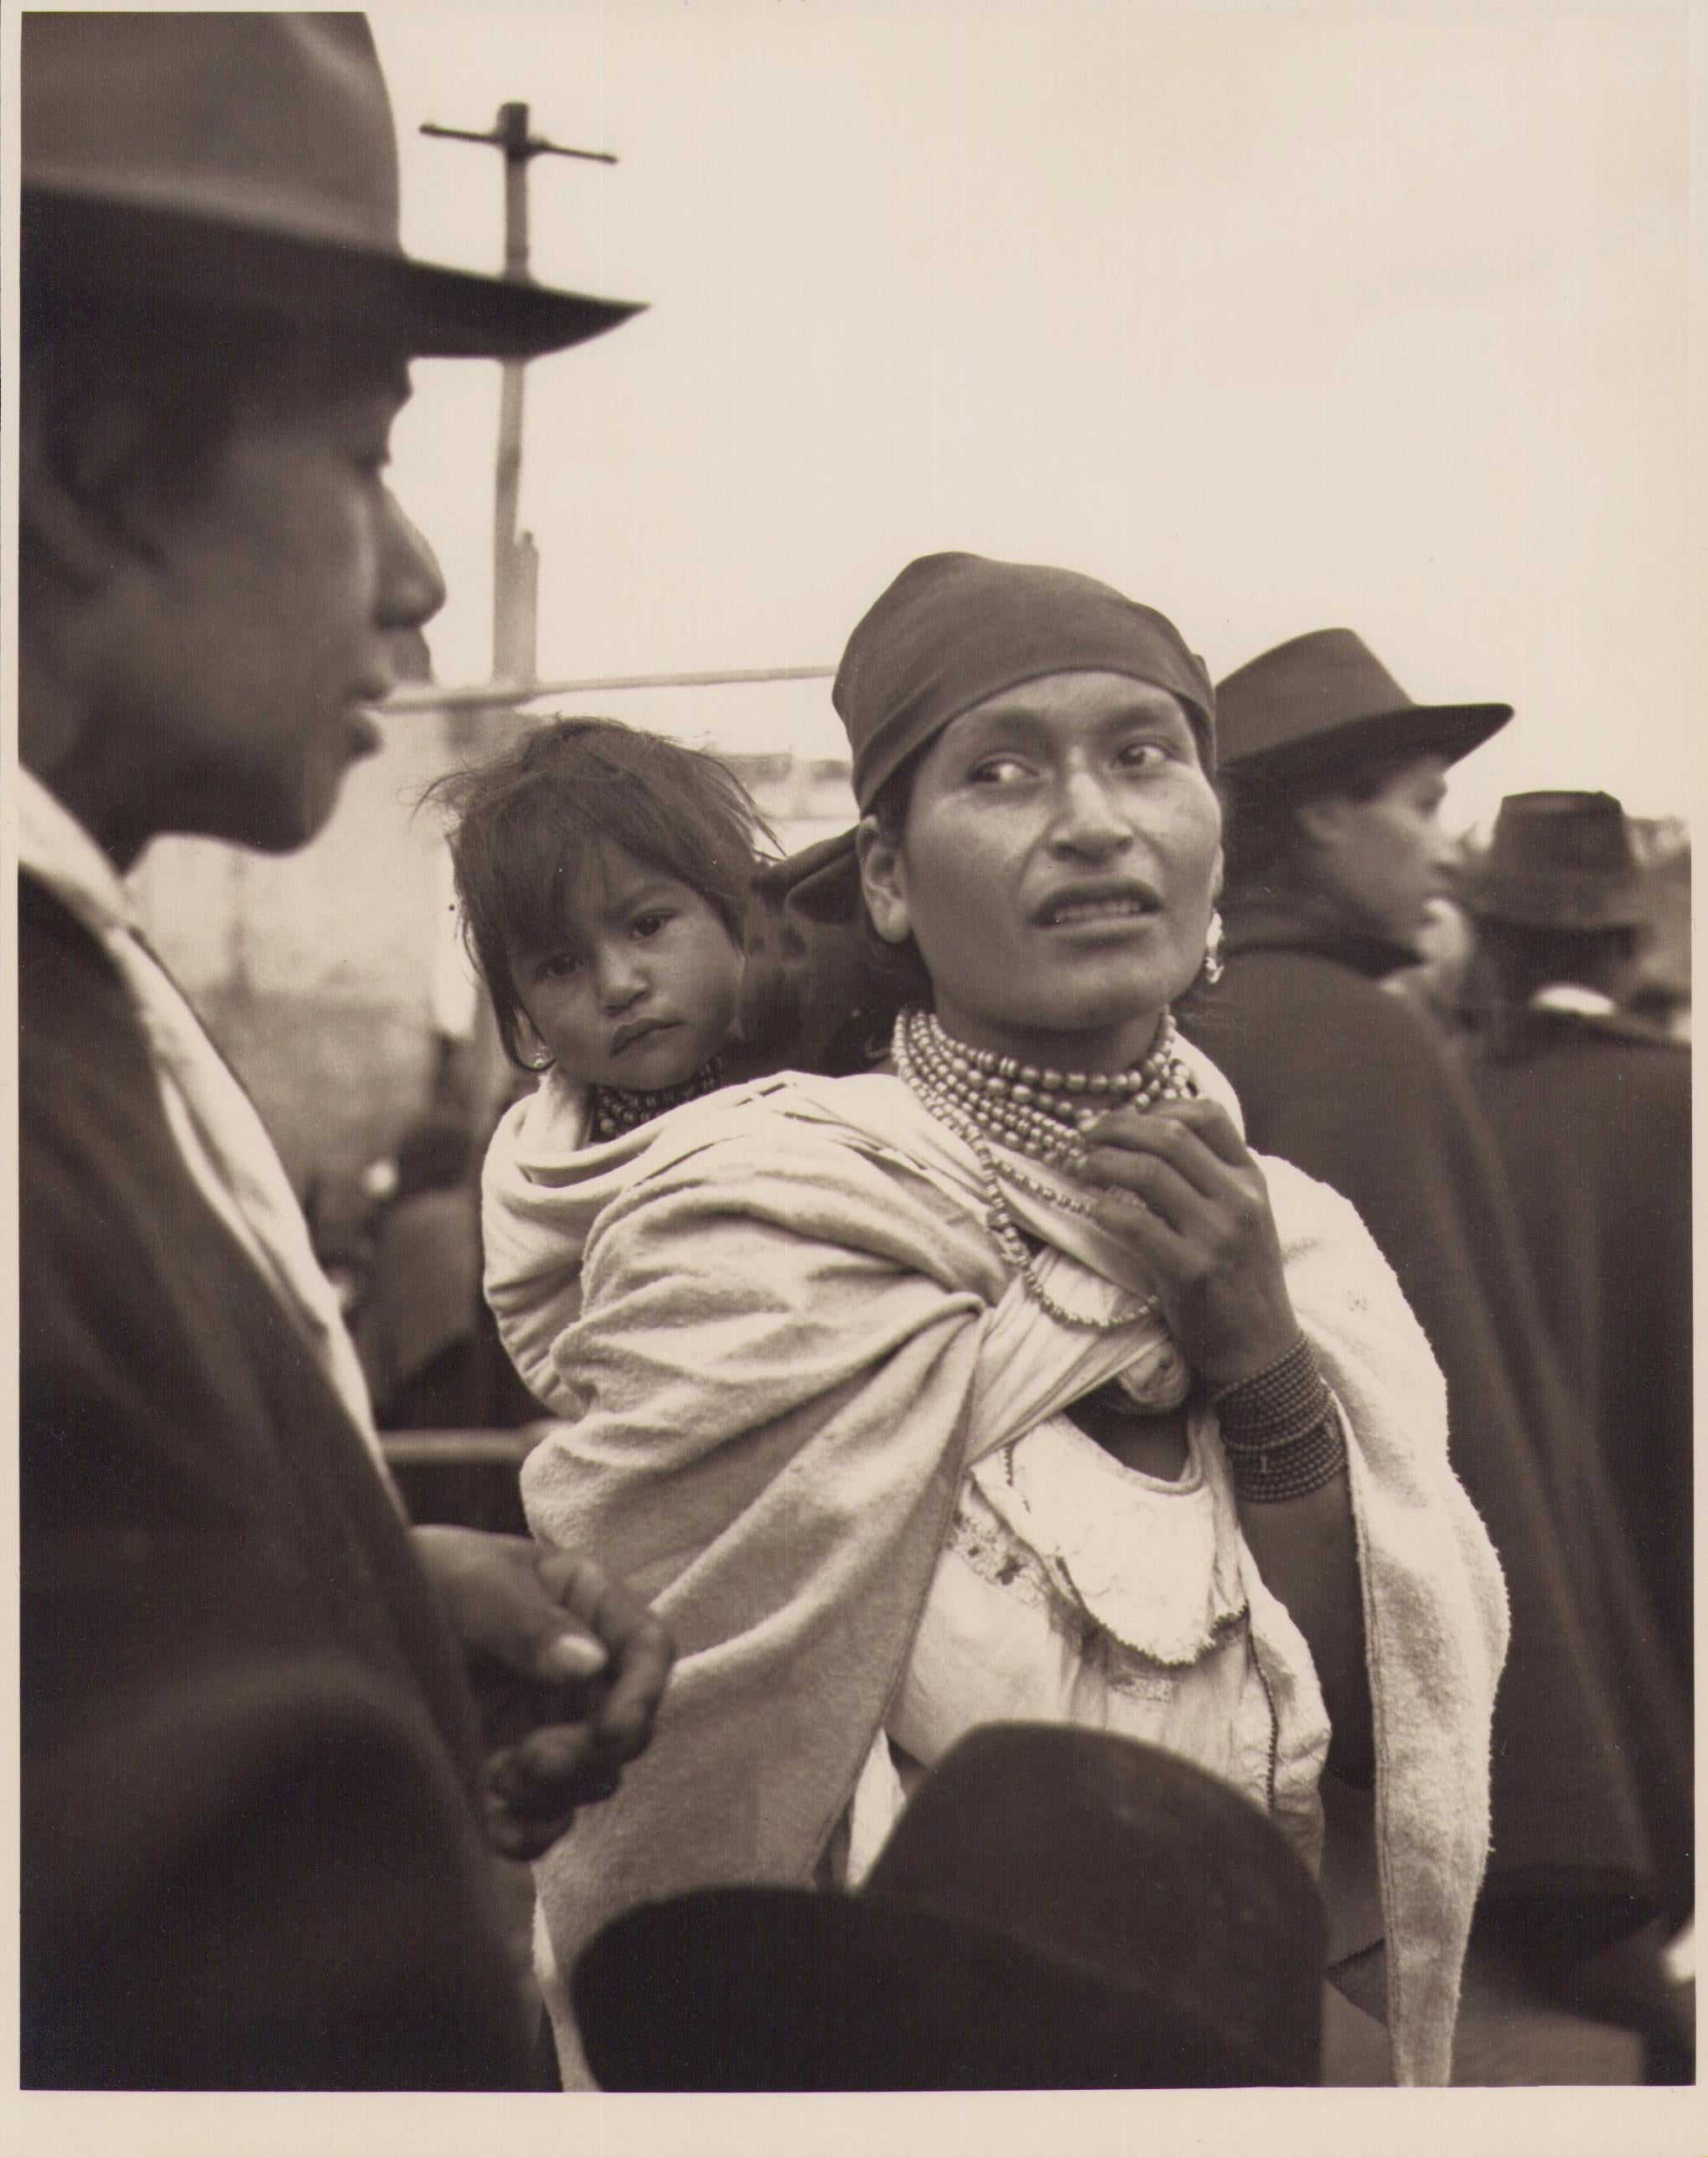 Hanna Seidel Portrait Photograph - Ecuador, Mother, Market, Black and White Photography, 1960s, 21, 8 x 17, 3 cm